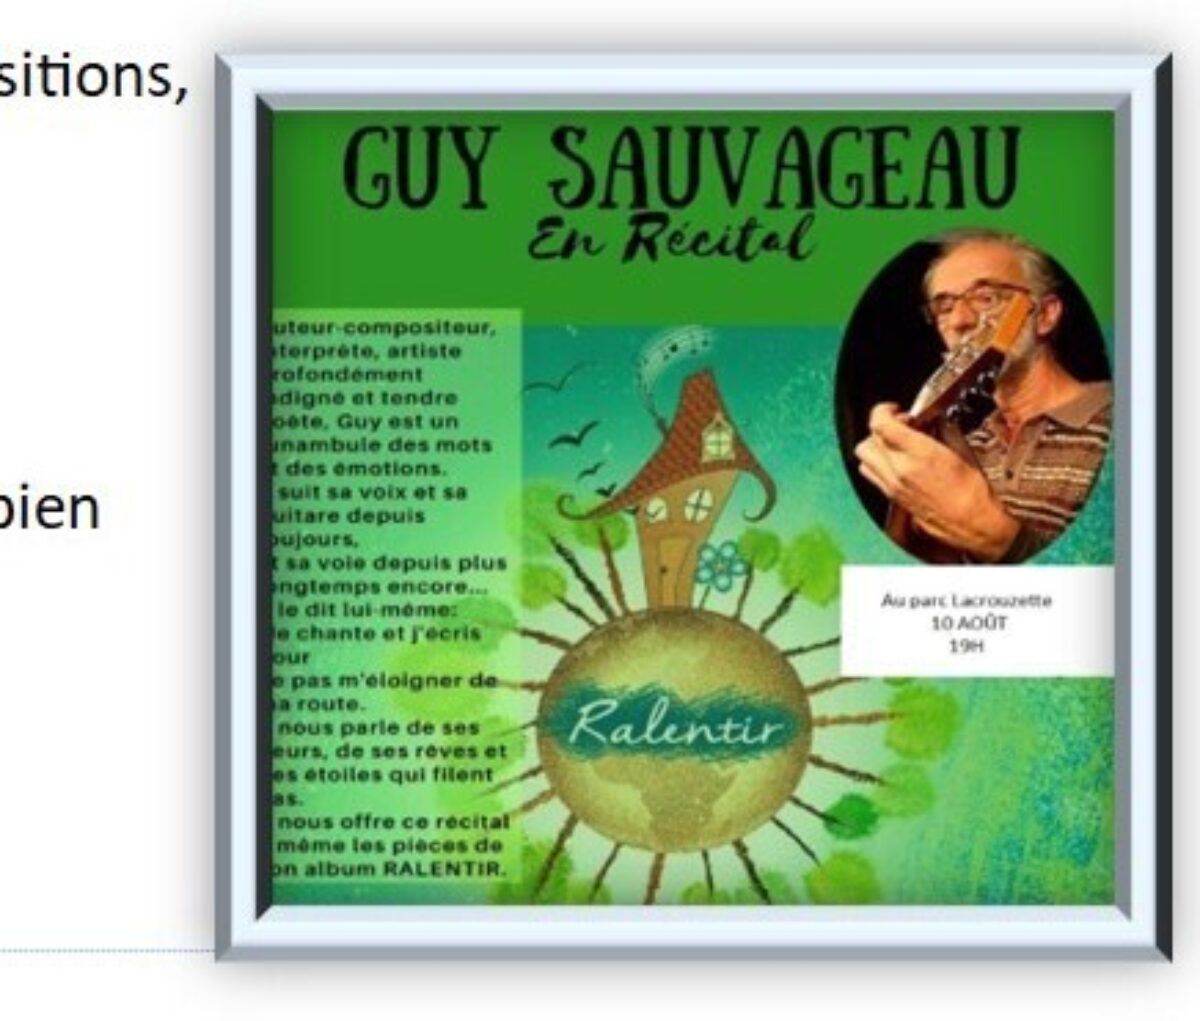 Guy Sauvageau2